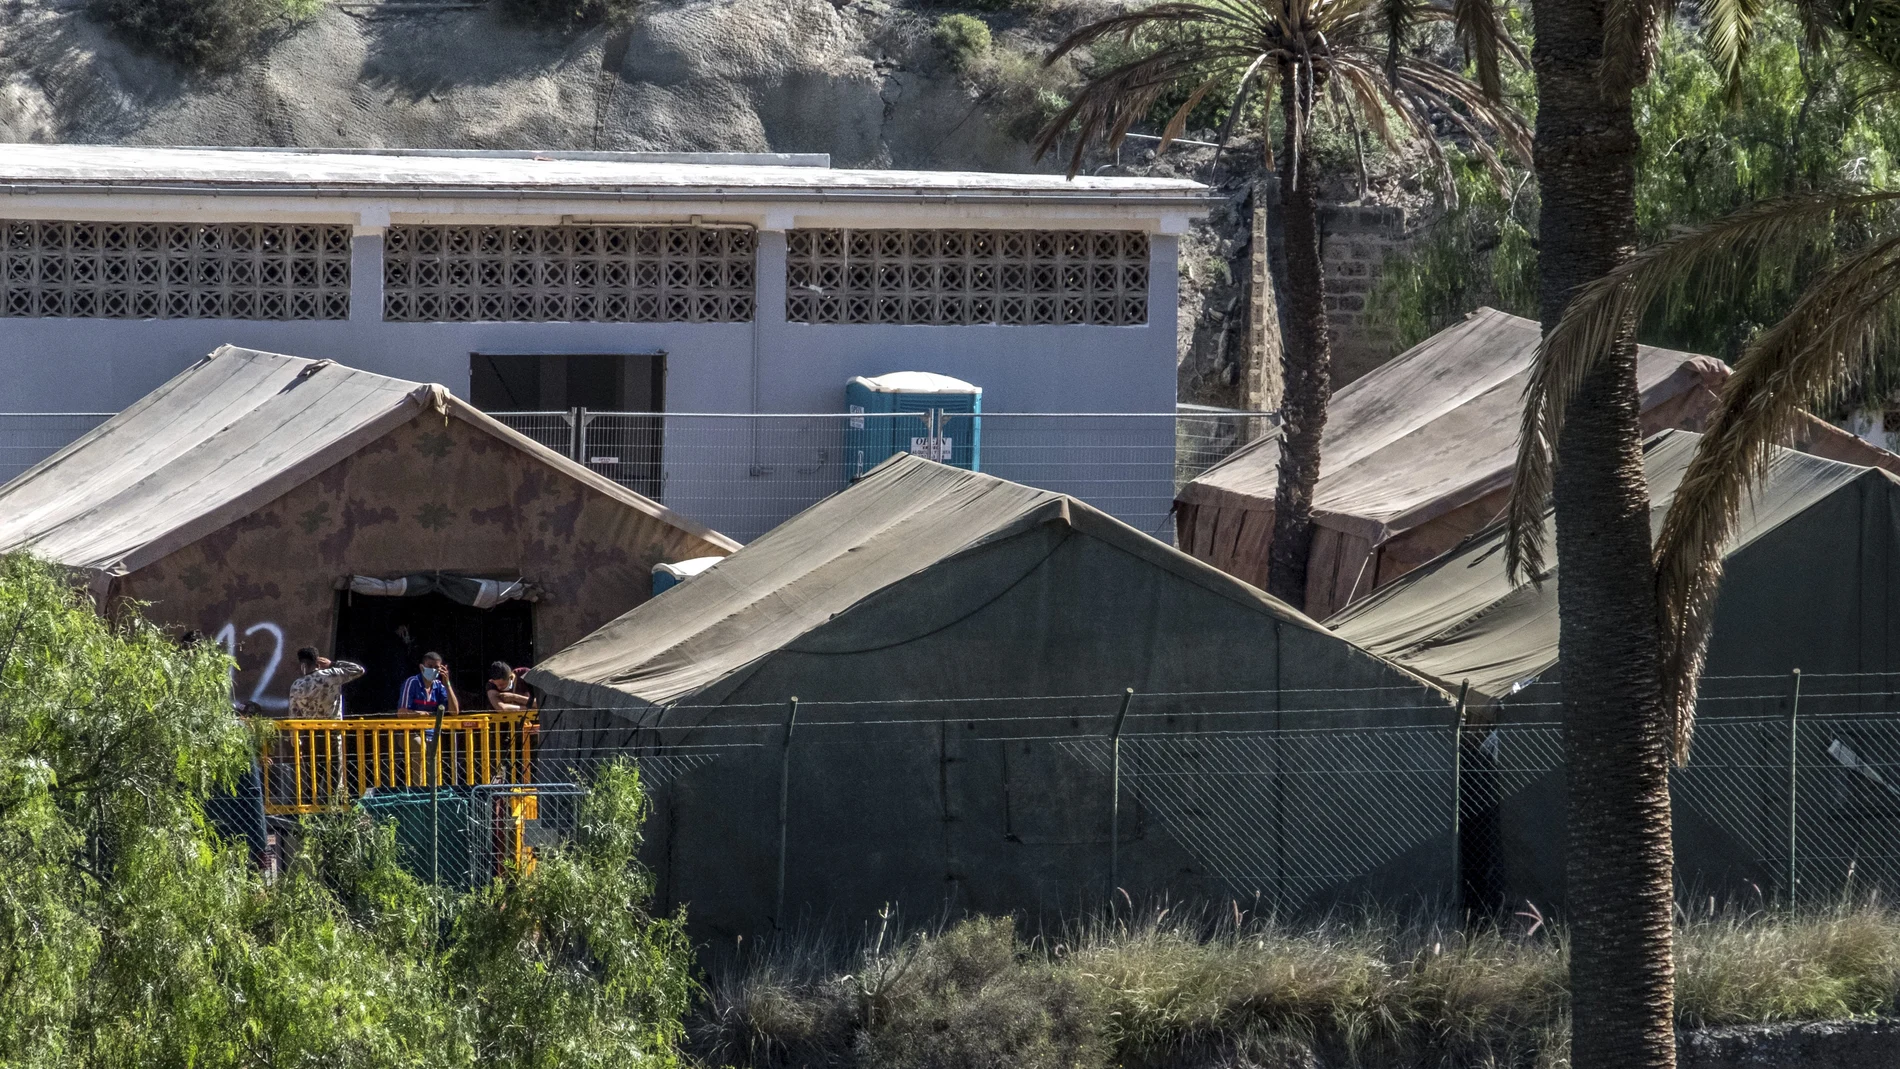 Migrantes en las instalaciones militares de Barranco Seco en Gran Canaria, donde se albergan en carpas